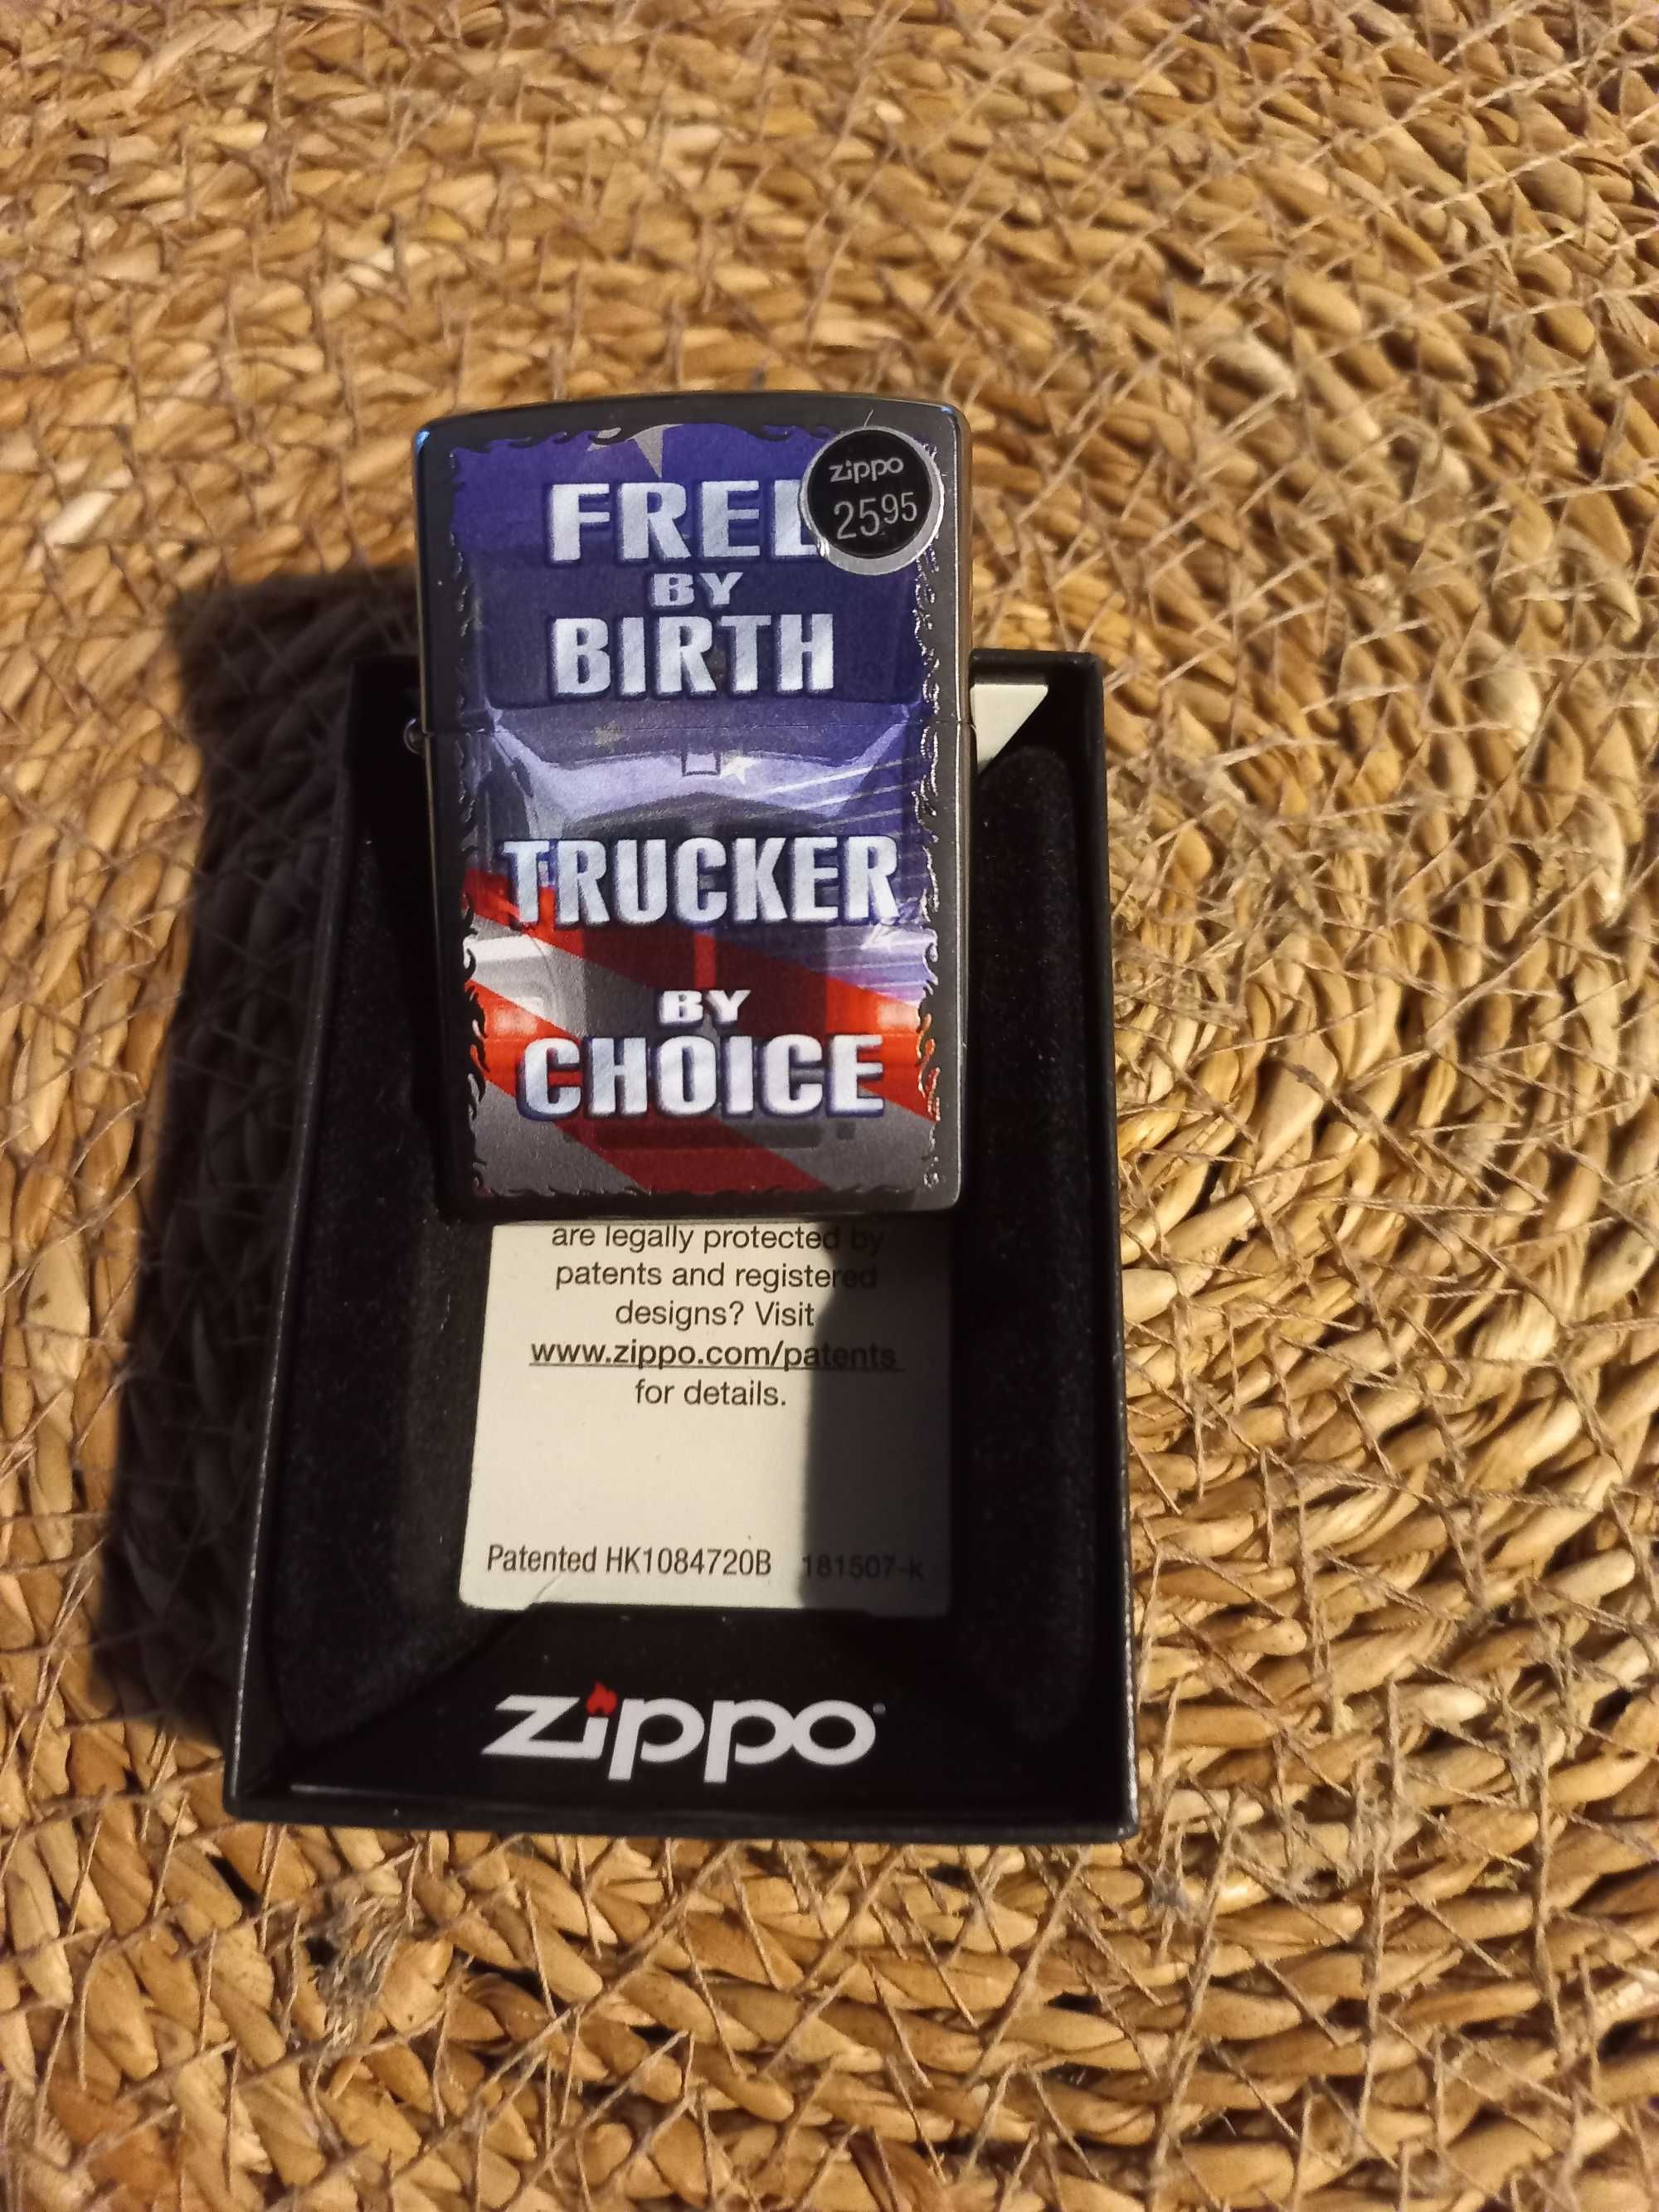 Nowa Zippo: Free by Birth Trucker by Choice. Polecam!!!